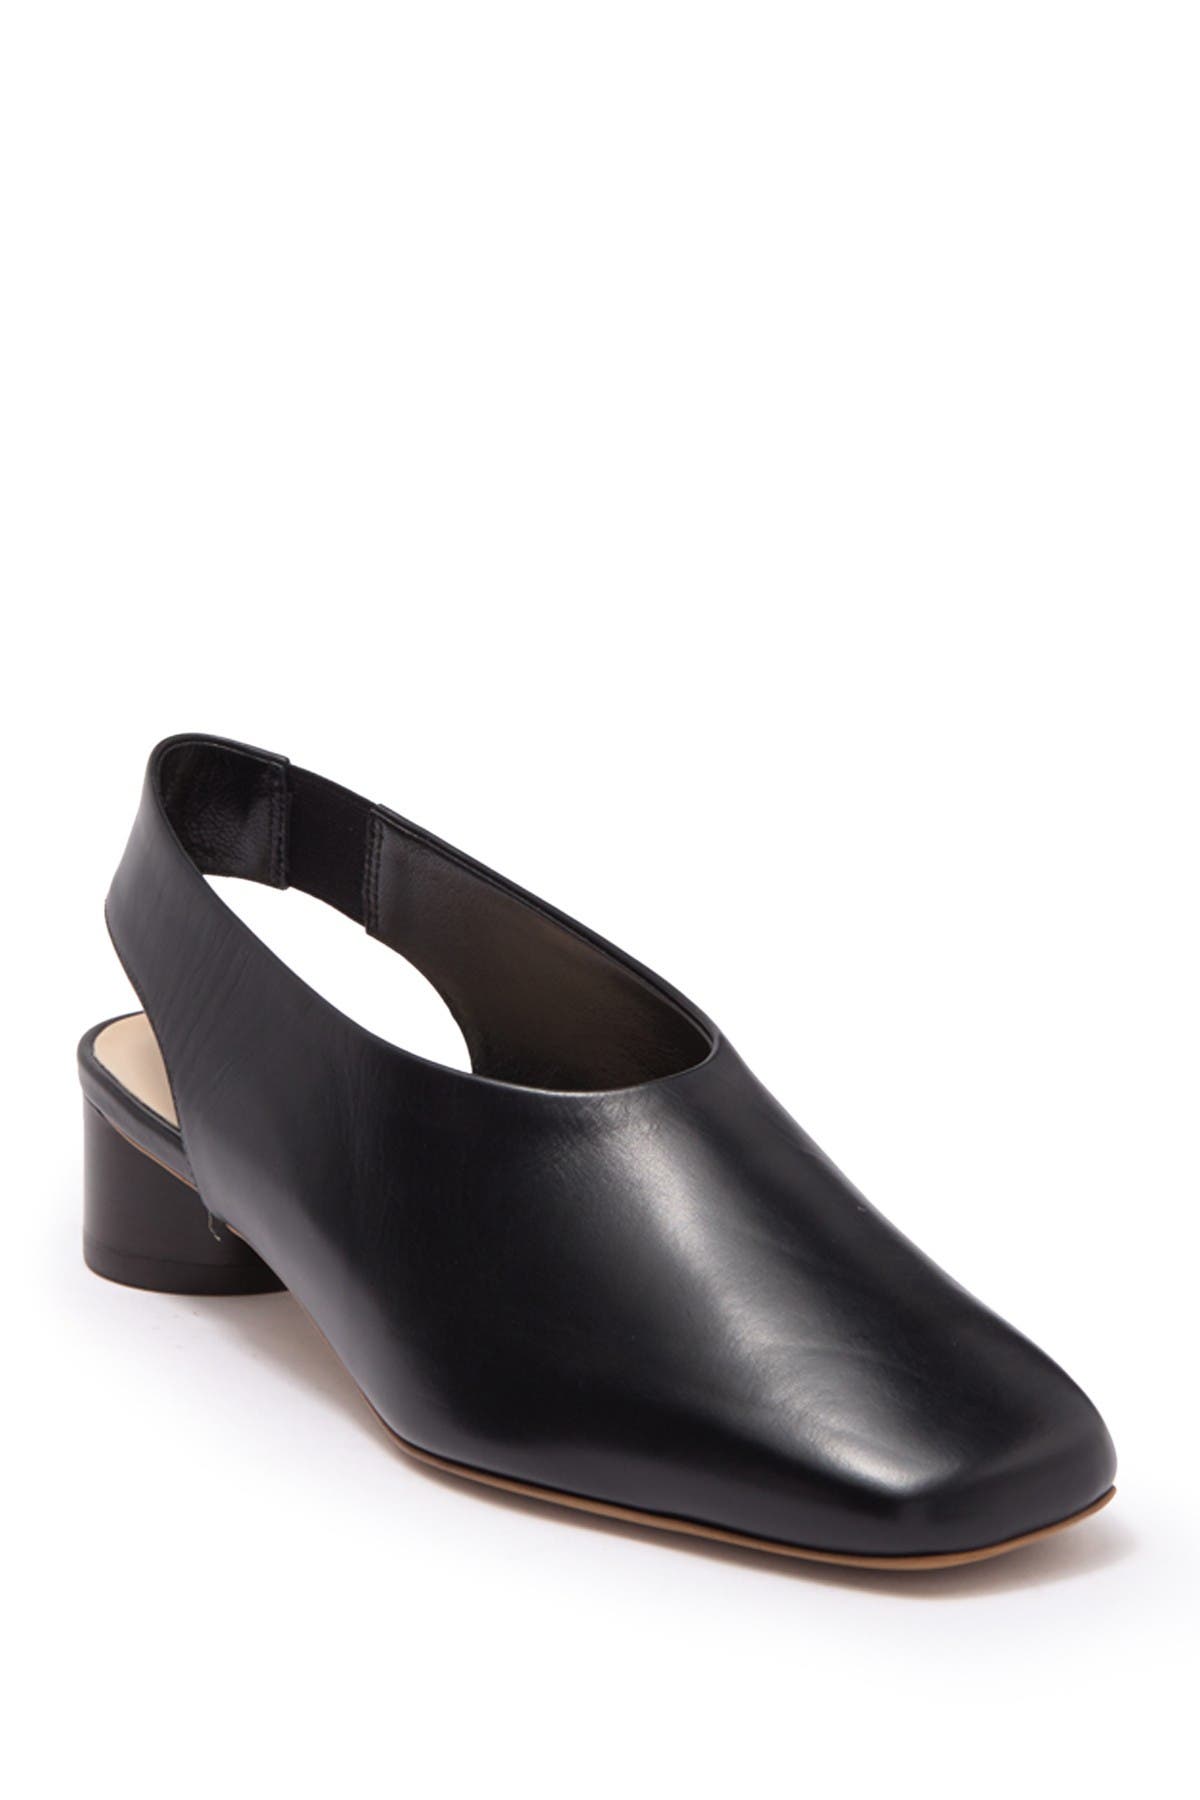 low heel black heels